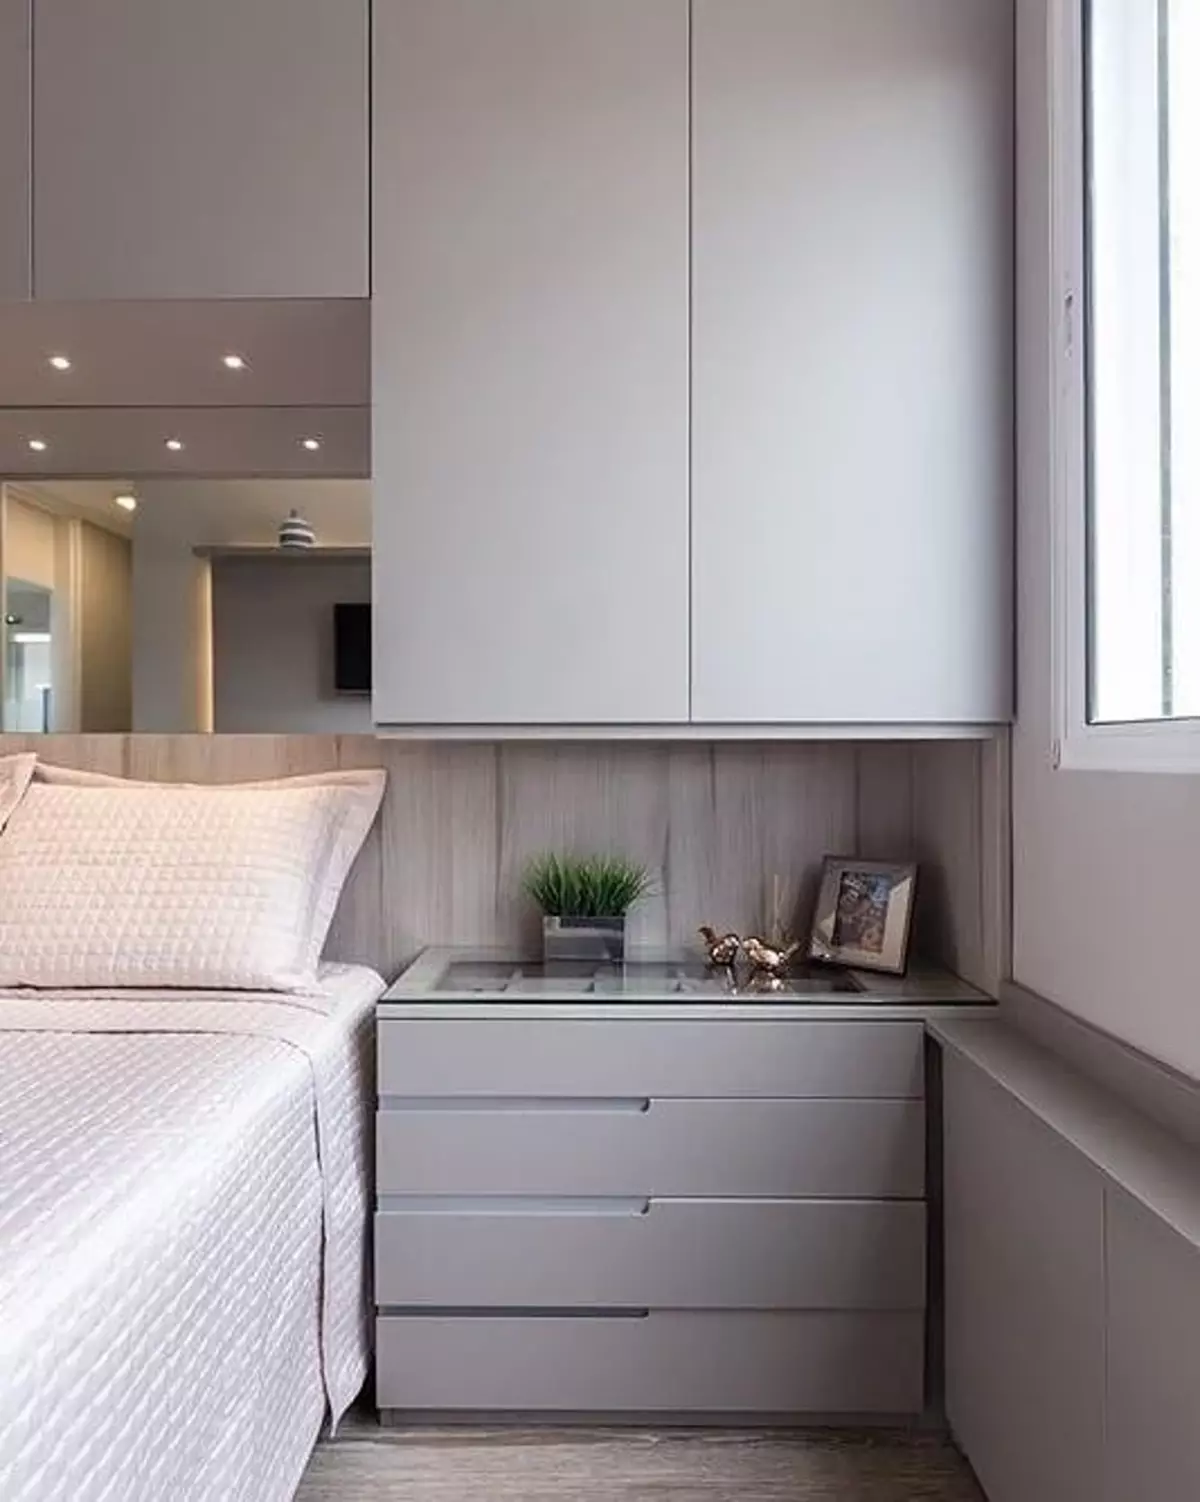 Çok küçük bir yatak odası nasıl ayarlanır: 8 ipucu ve tasarımcının görüşü 14166_12